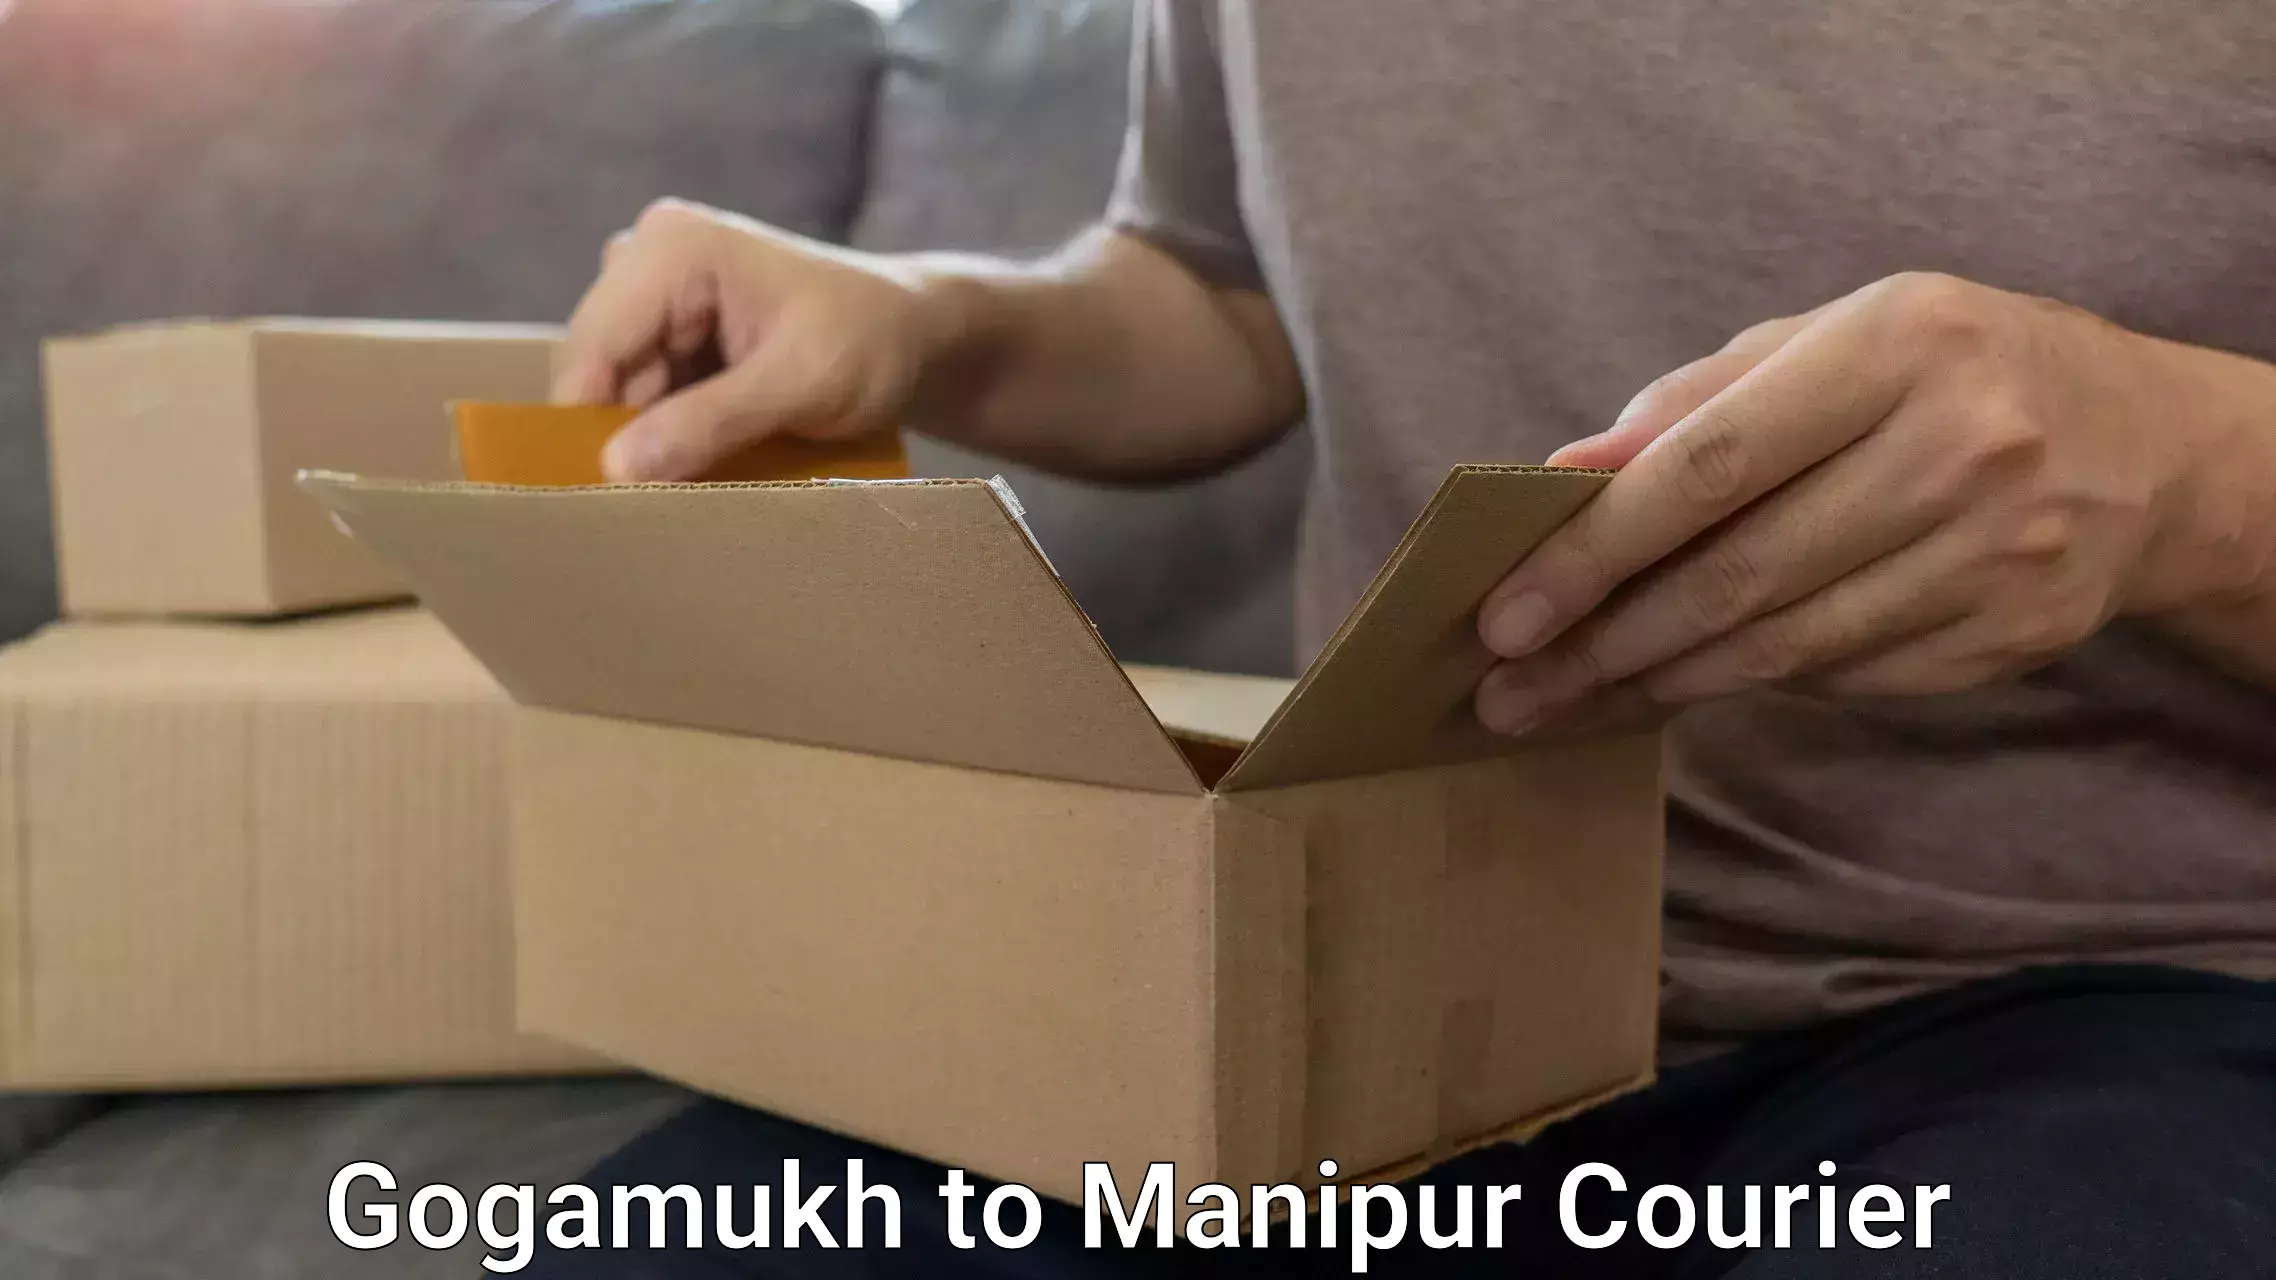 Luggage transport deals Gogamukh to Manipur